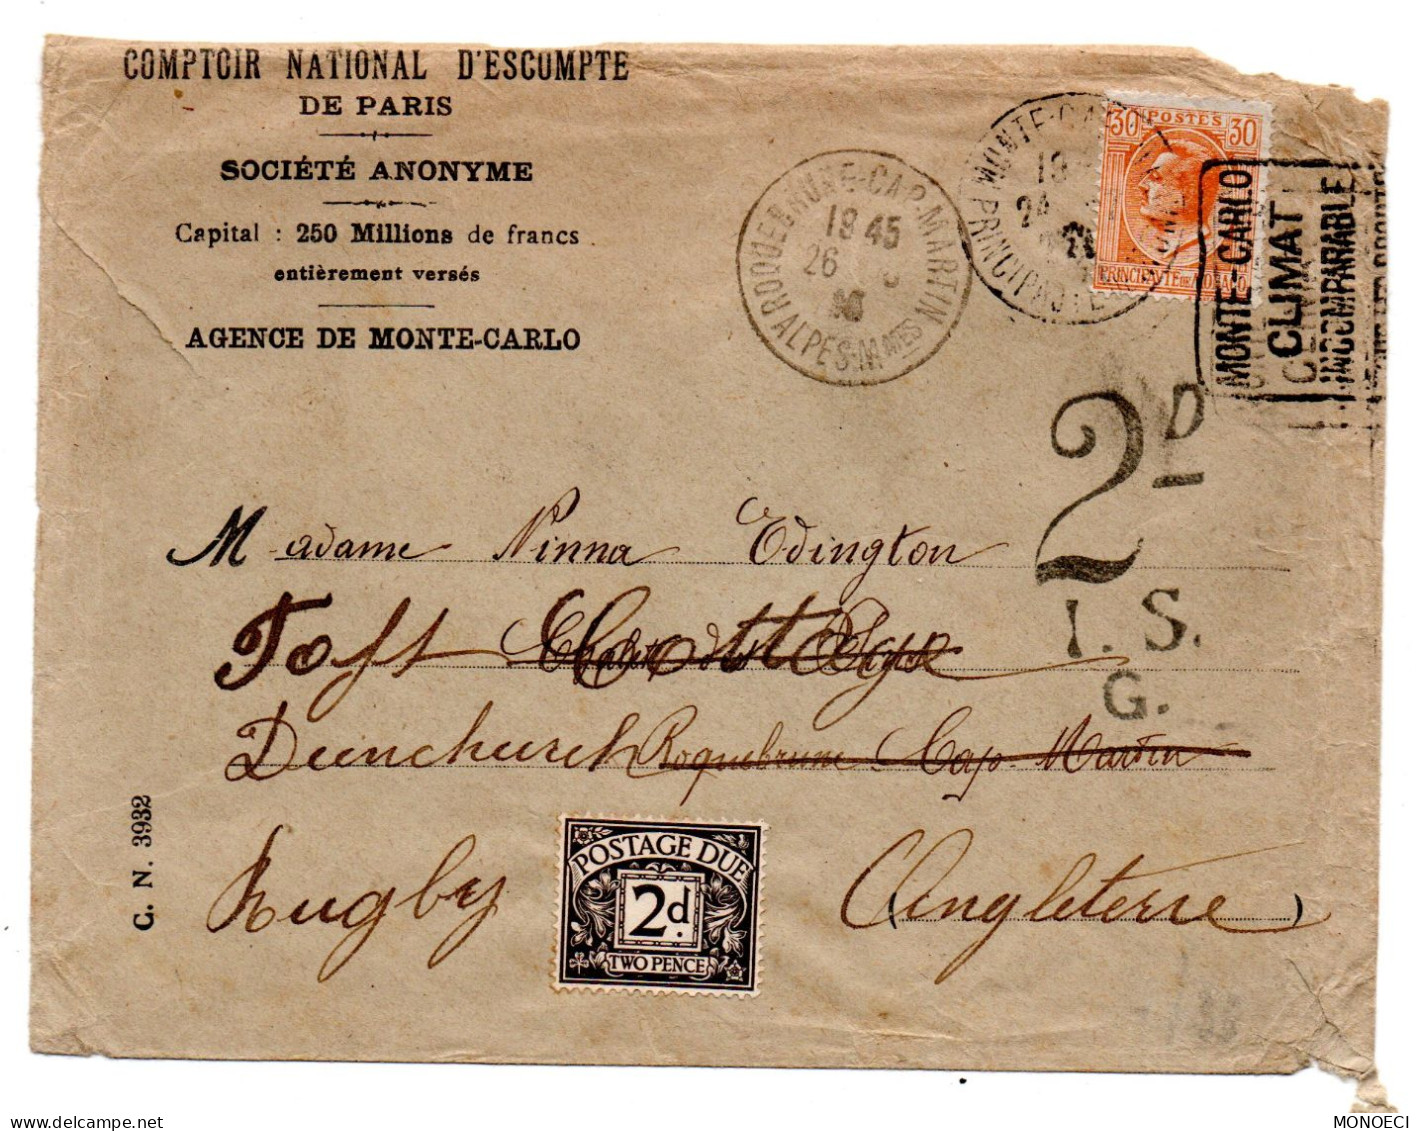 MONACO -- MONTE CARLO -- Enveloppe C.N.E.P. Taxée 2d -- Timbre 30 C. Prince Louis II  Pour L'Angleterre - Gebraucht